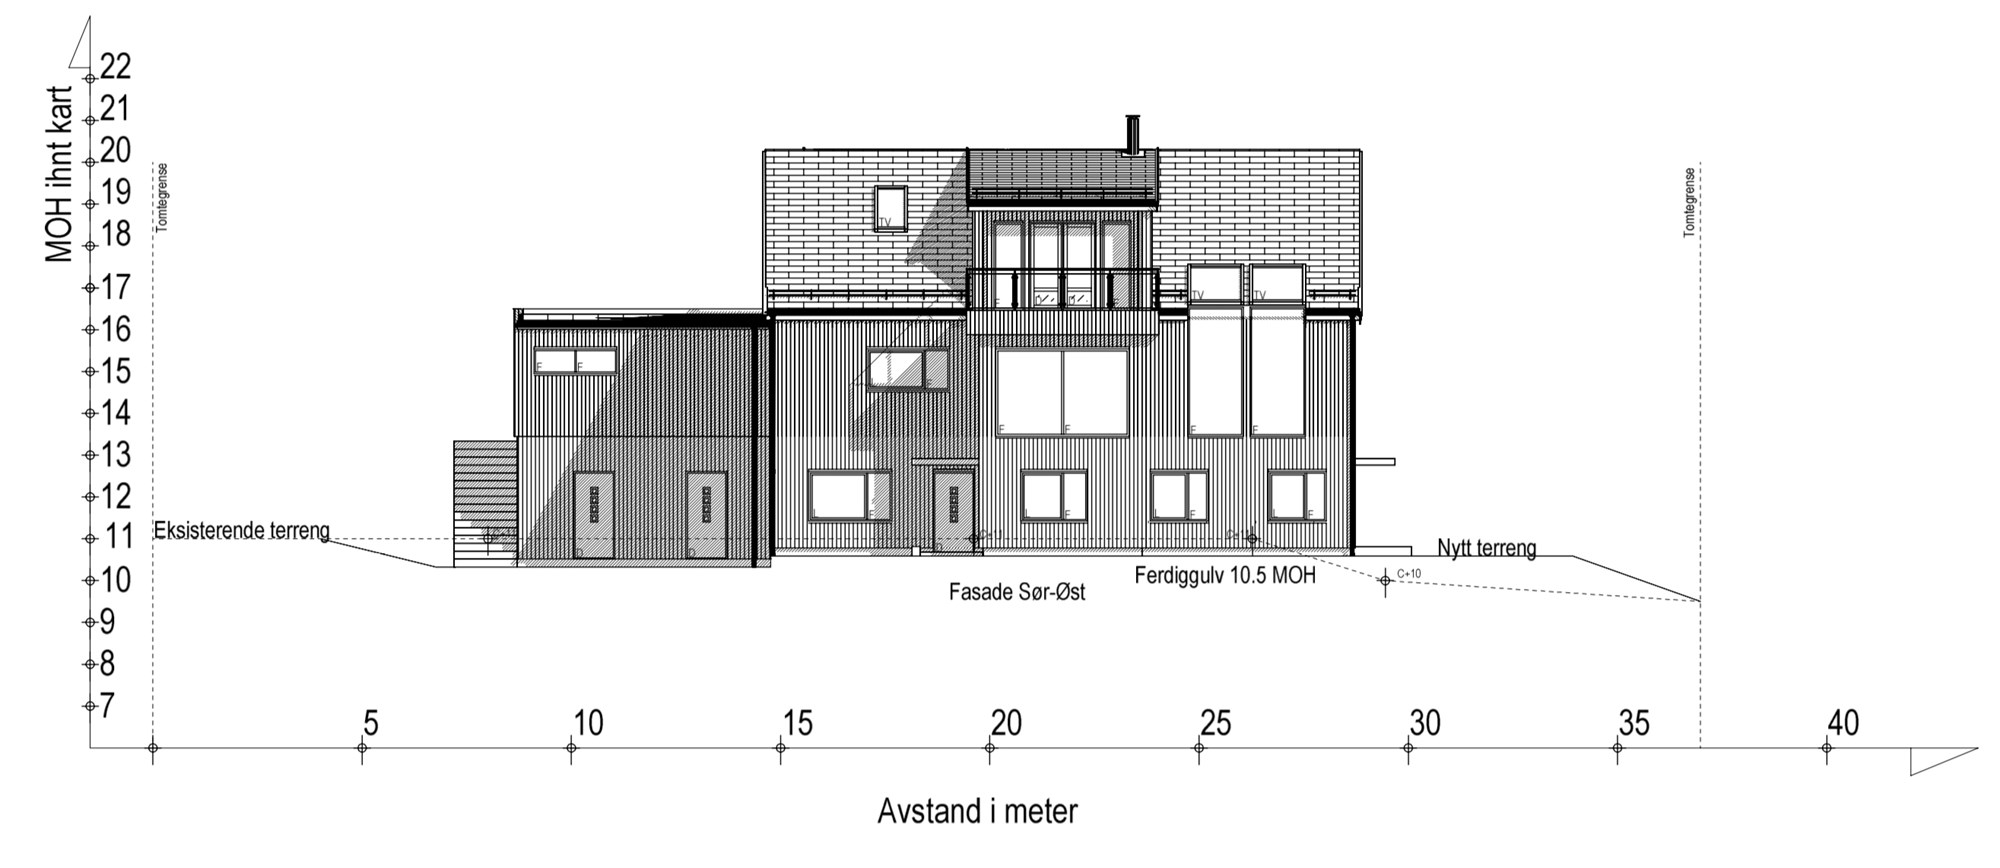 Et hus og et hjem - Fasade sør.jpeg - disch